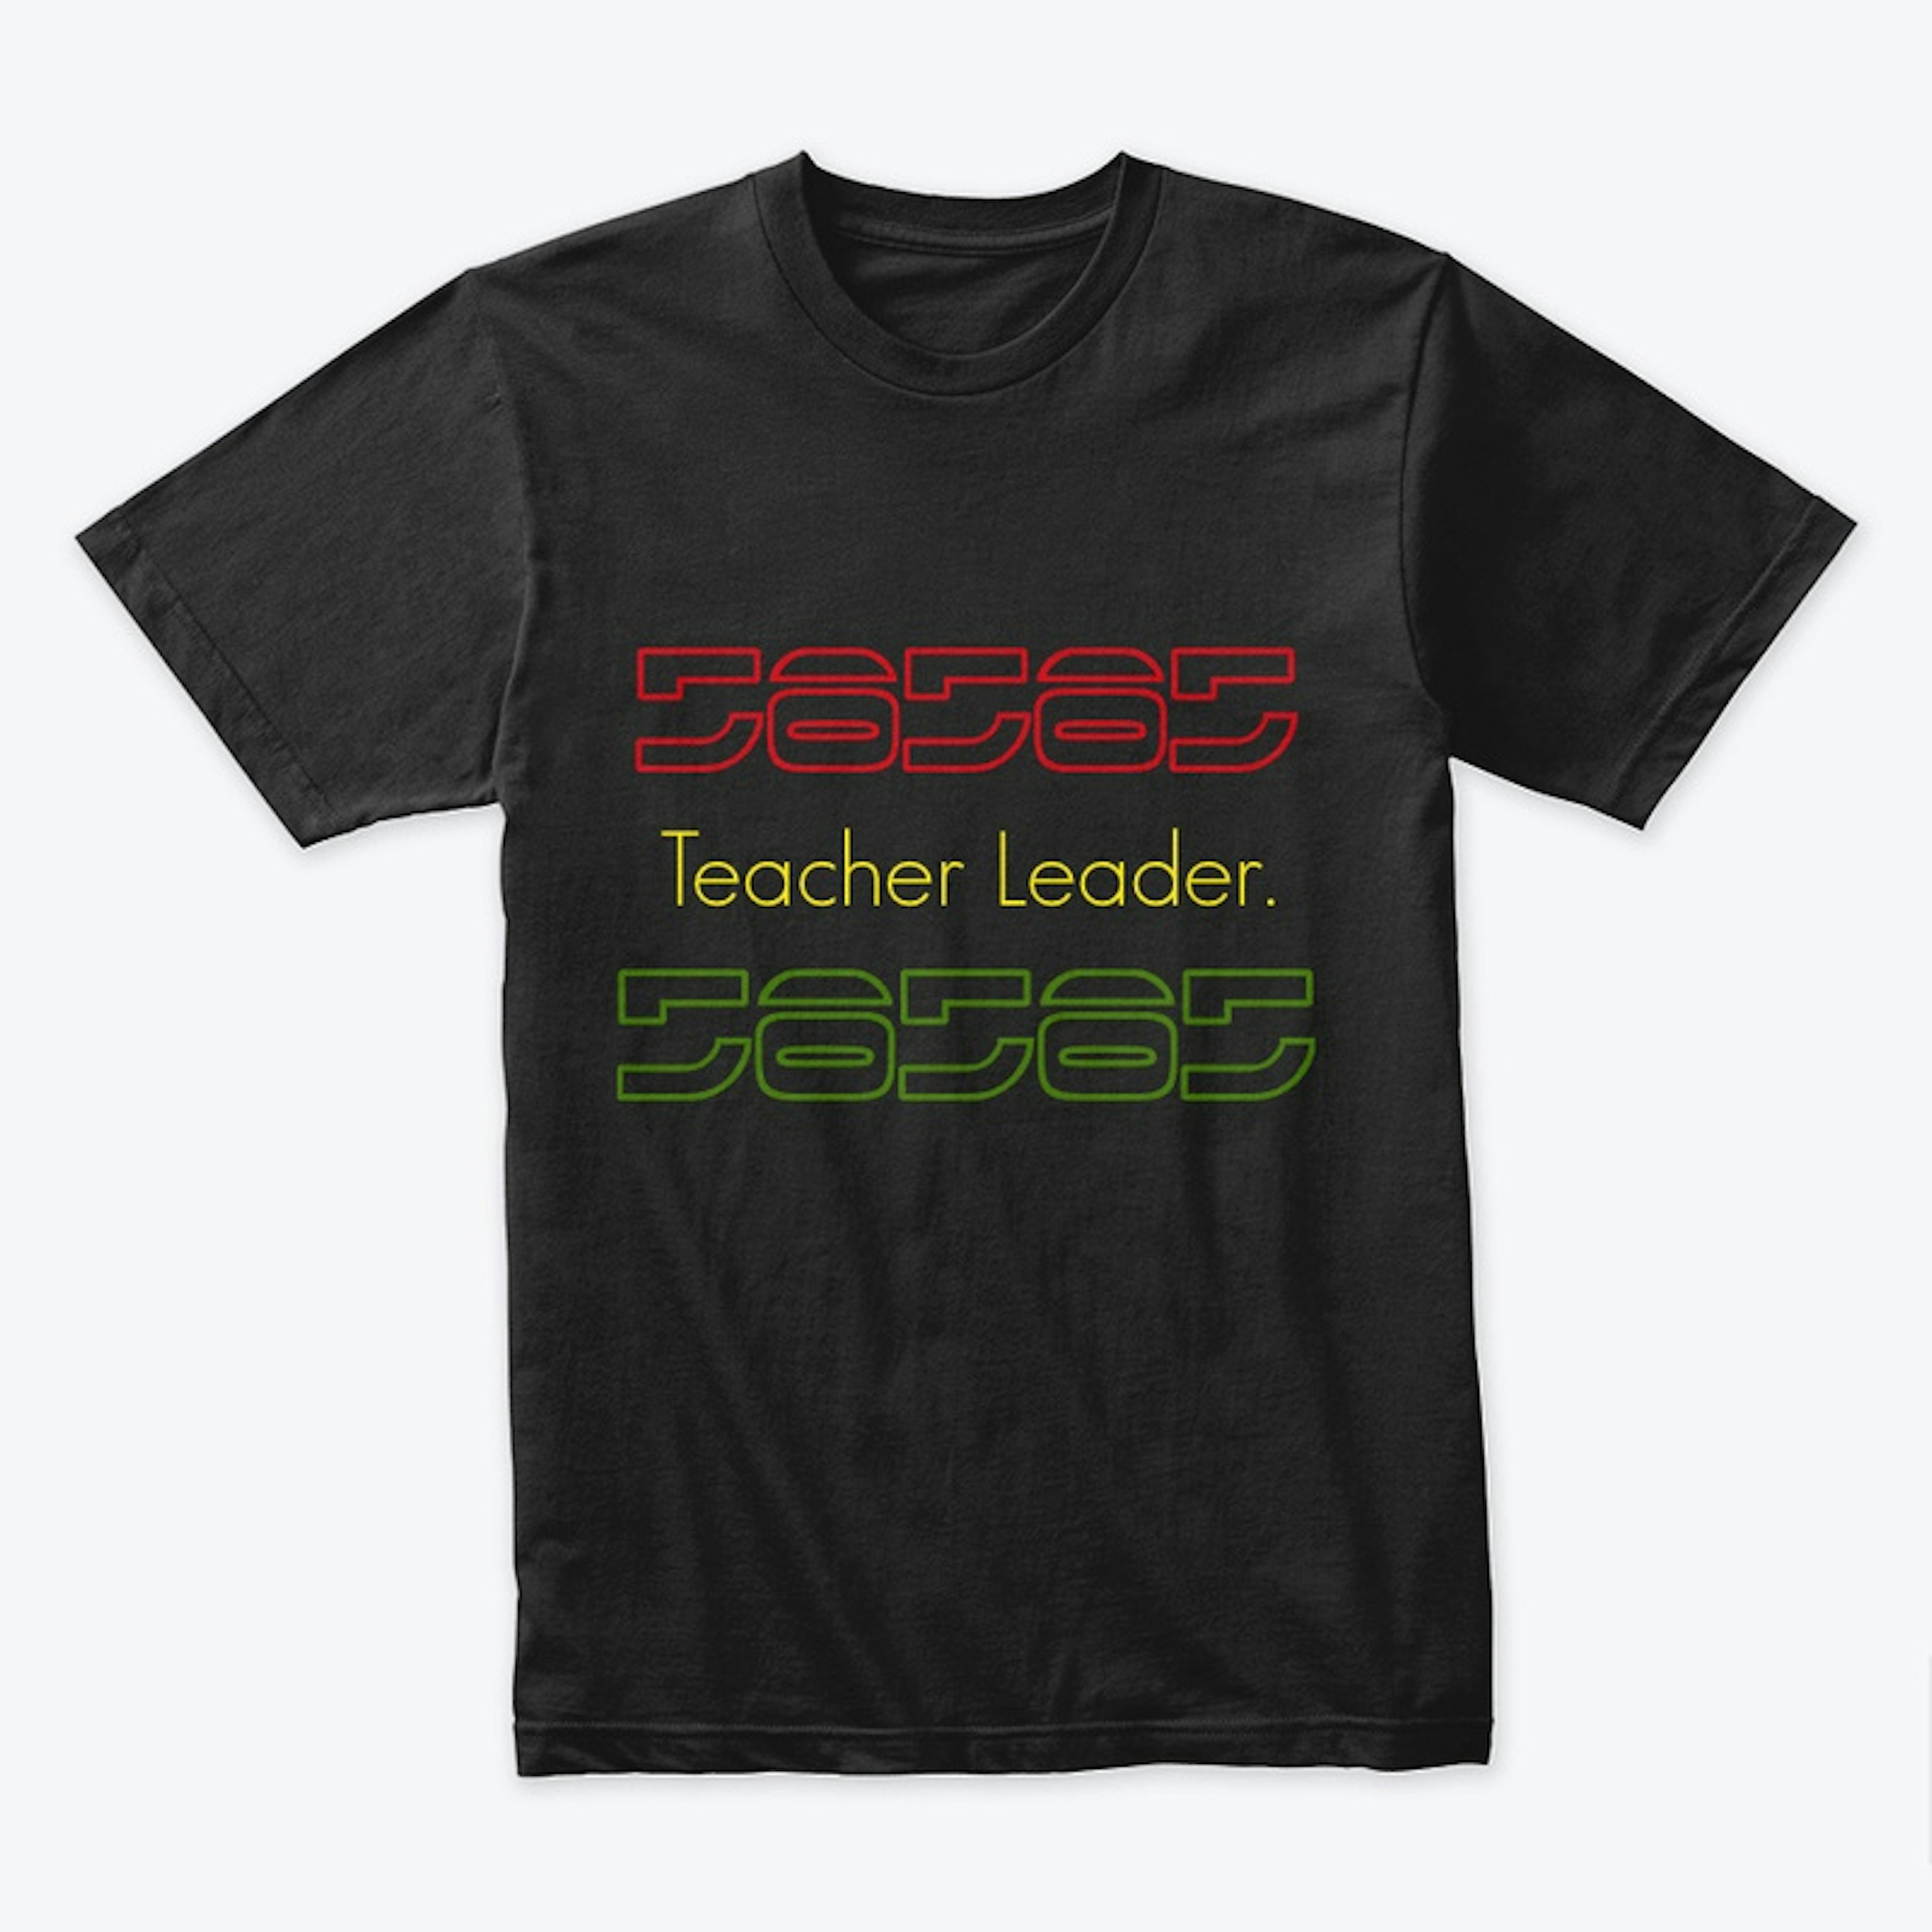 Teacher Leader.